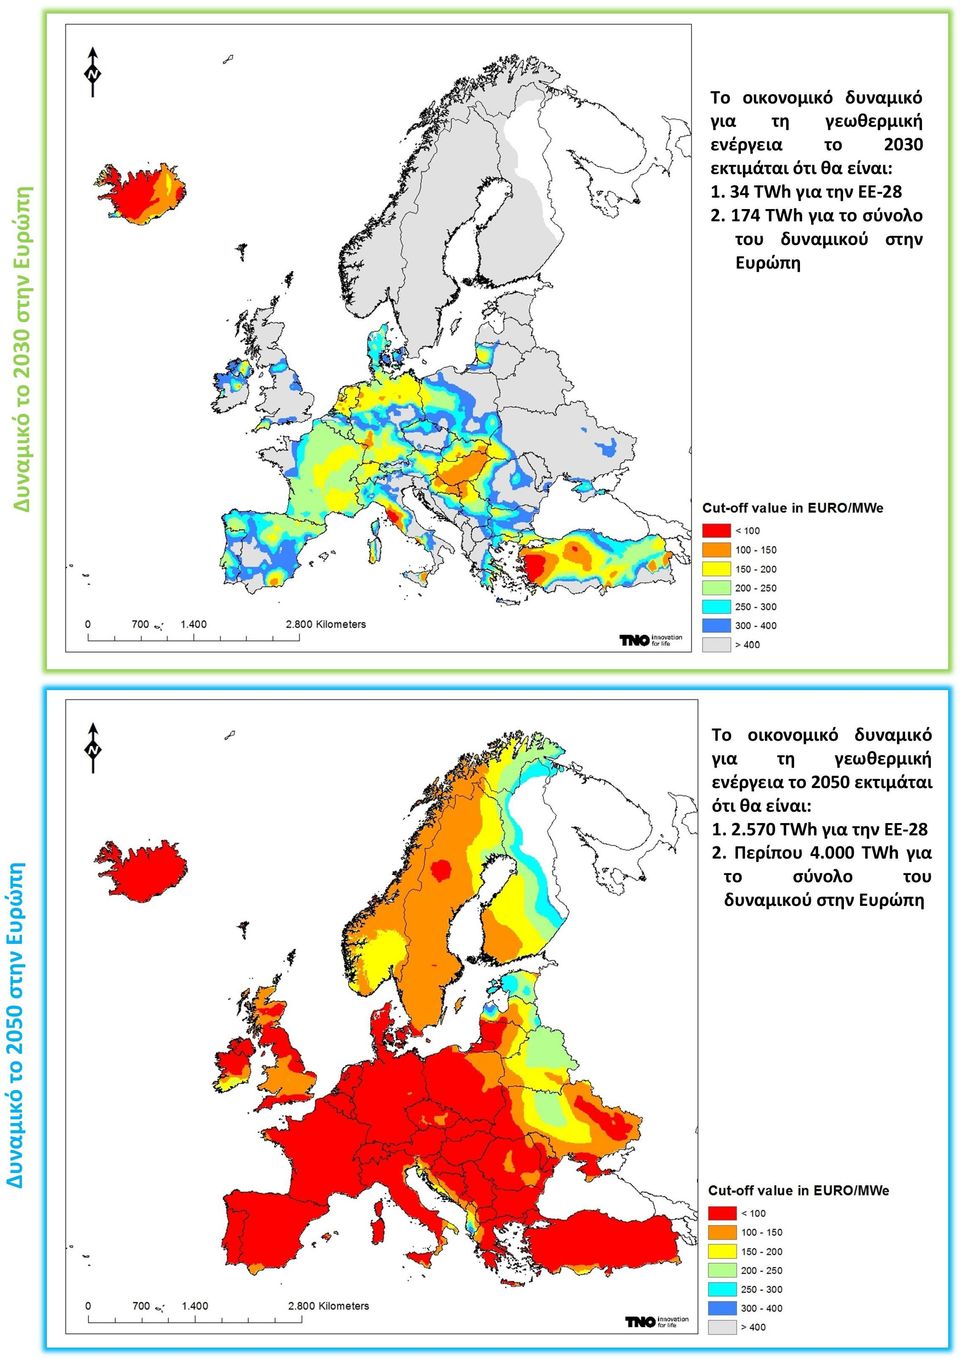 174 TWh για το σύνολο του δυναμικού στην Ευρώπη Το οικονομικό δυναμικό για τη γεωθερμική